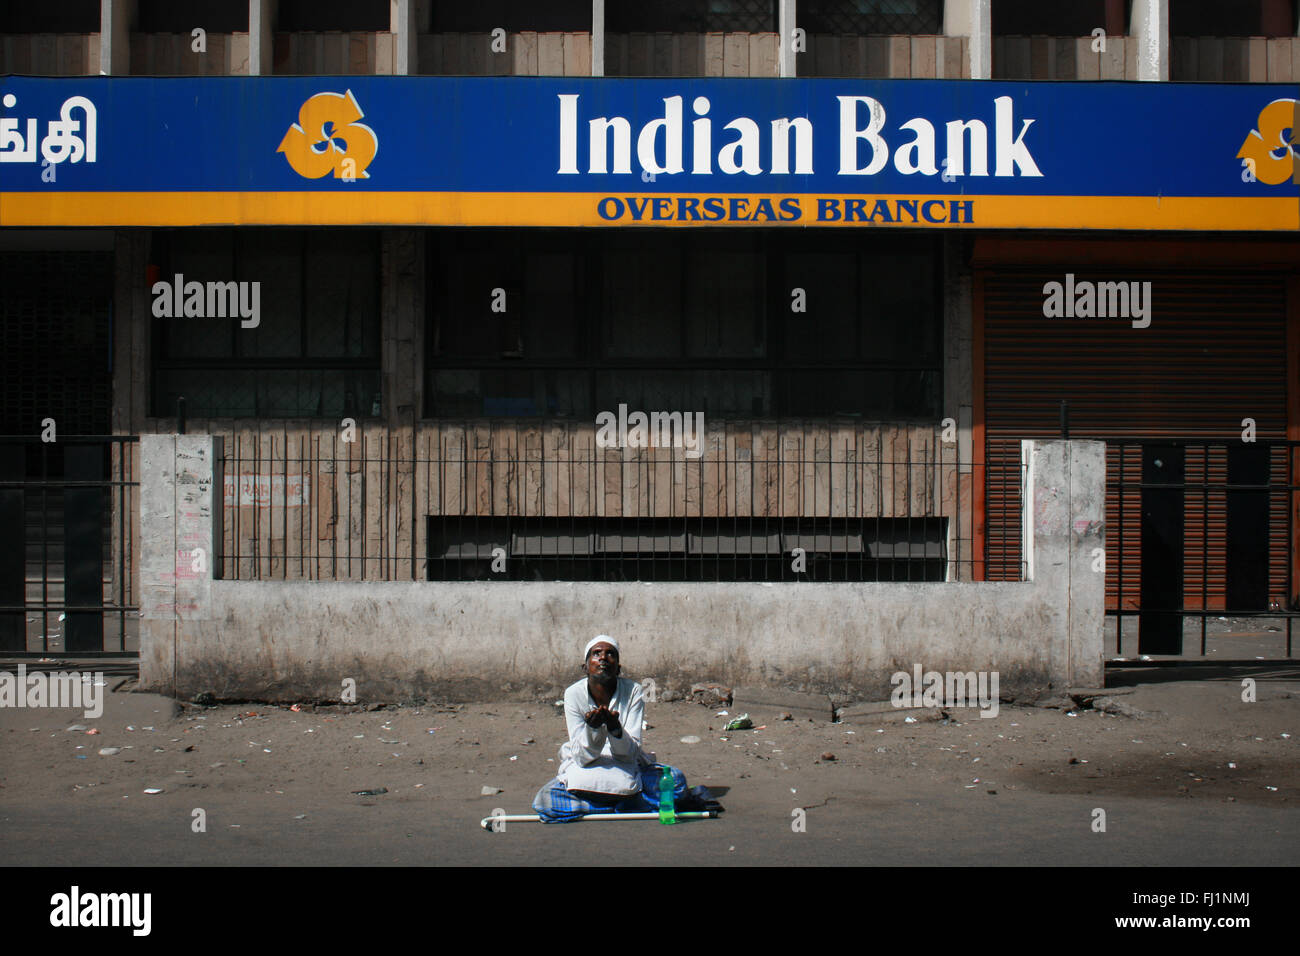 India beggar Banque de photographies et d'images à haute résolution - Alamy